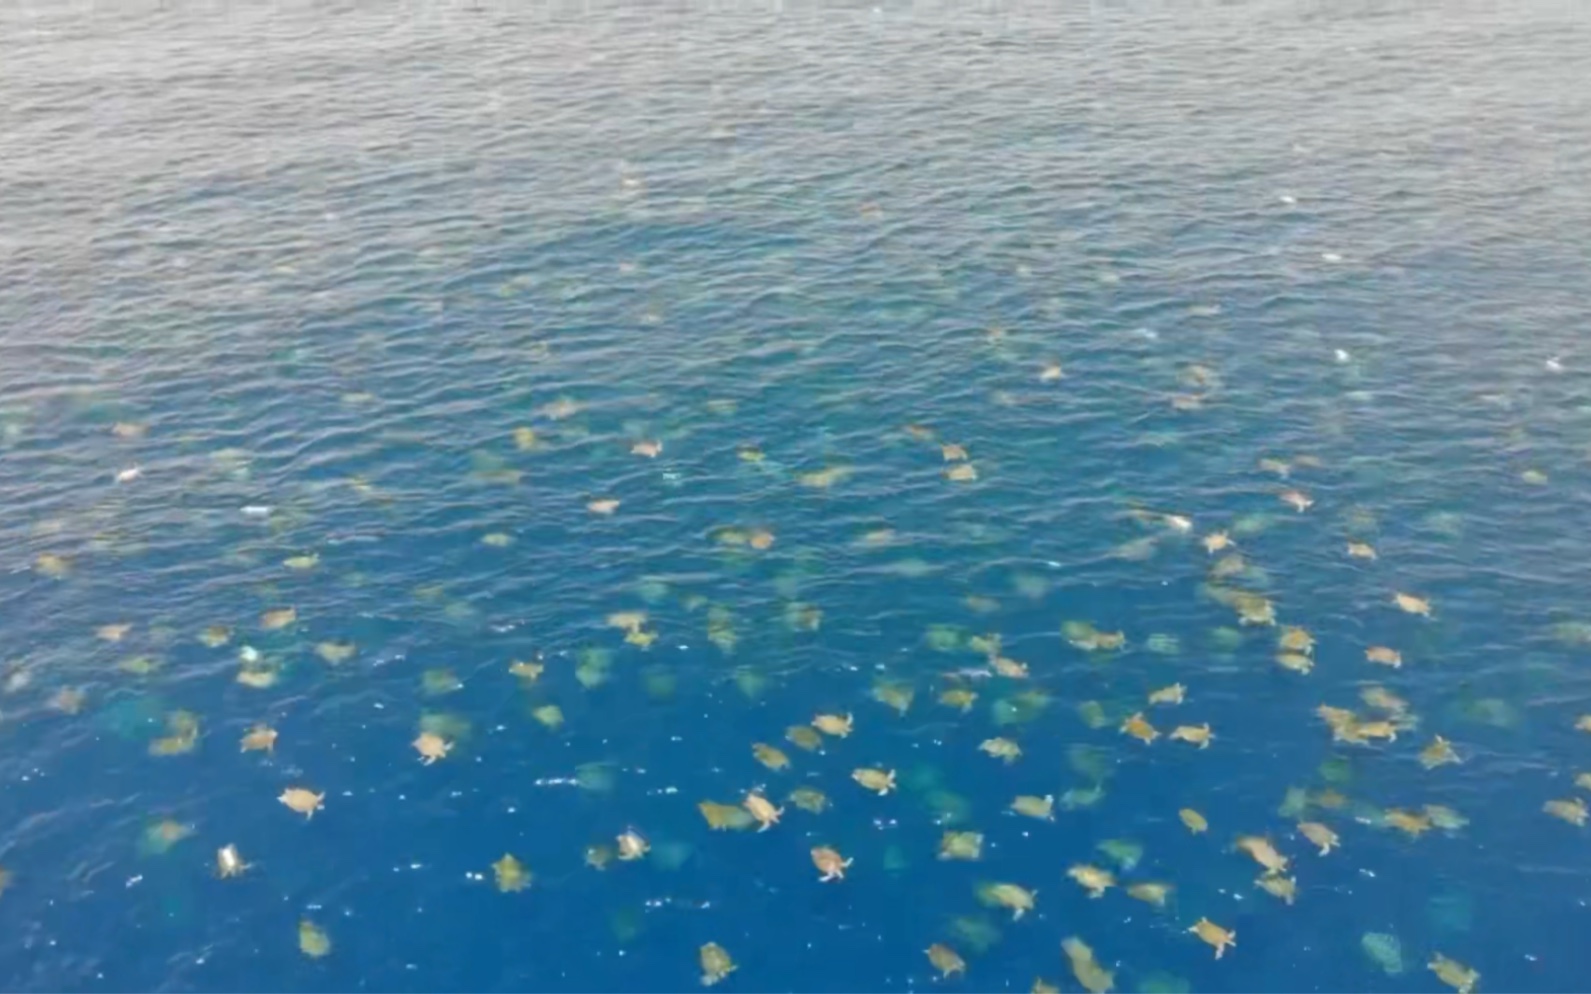 海面上密密麻麻的小白点竟是十万只海龟？澳洲雷恩岛何以成为全球最大绿海龟产卵场？